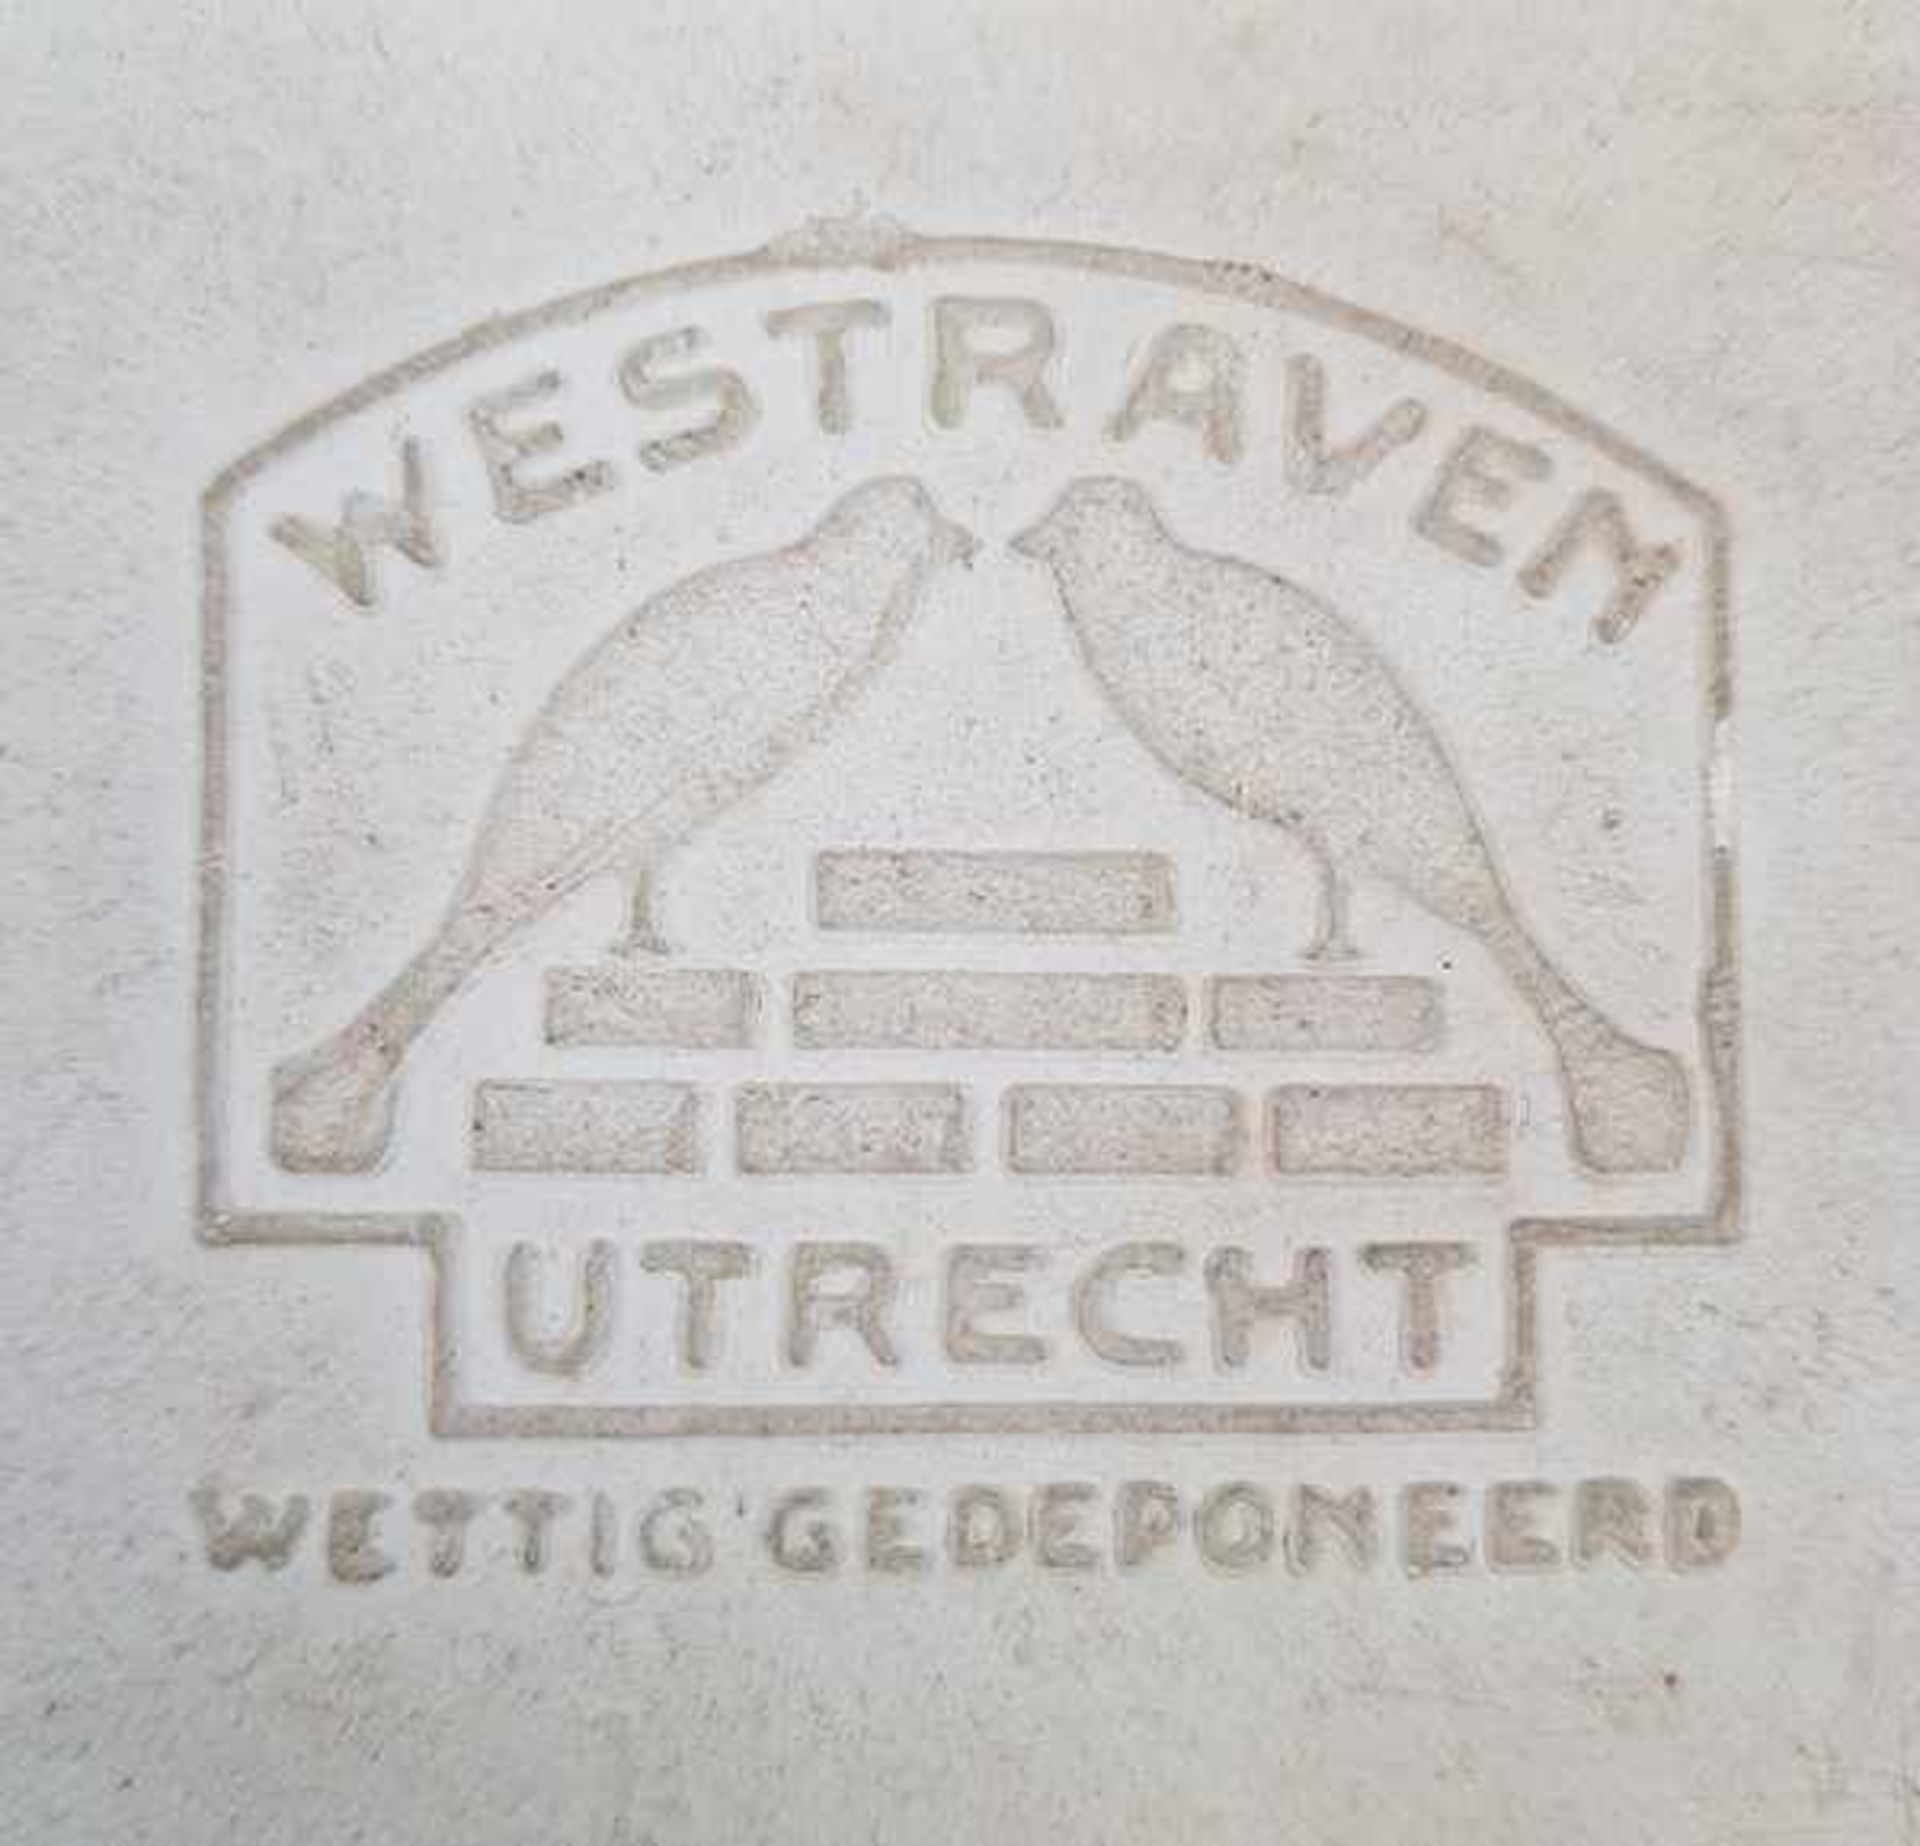 (Aardewerk) Tegels Westraven Utrecht - Bild 2 aus 7